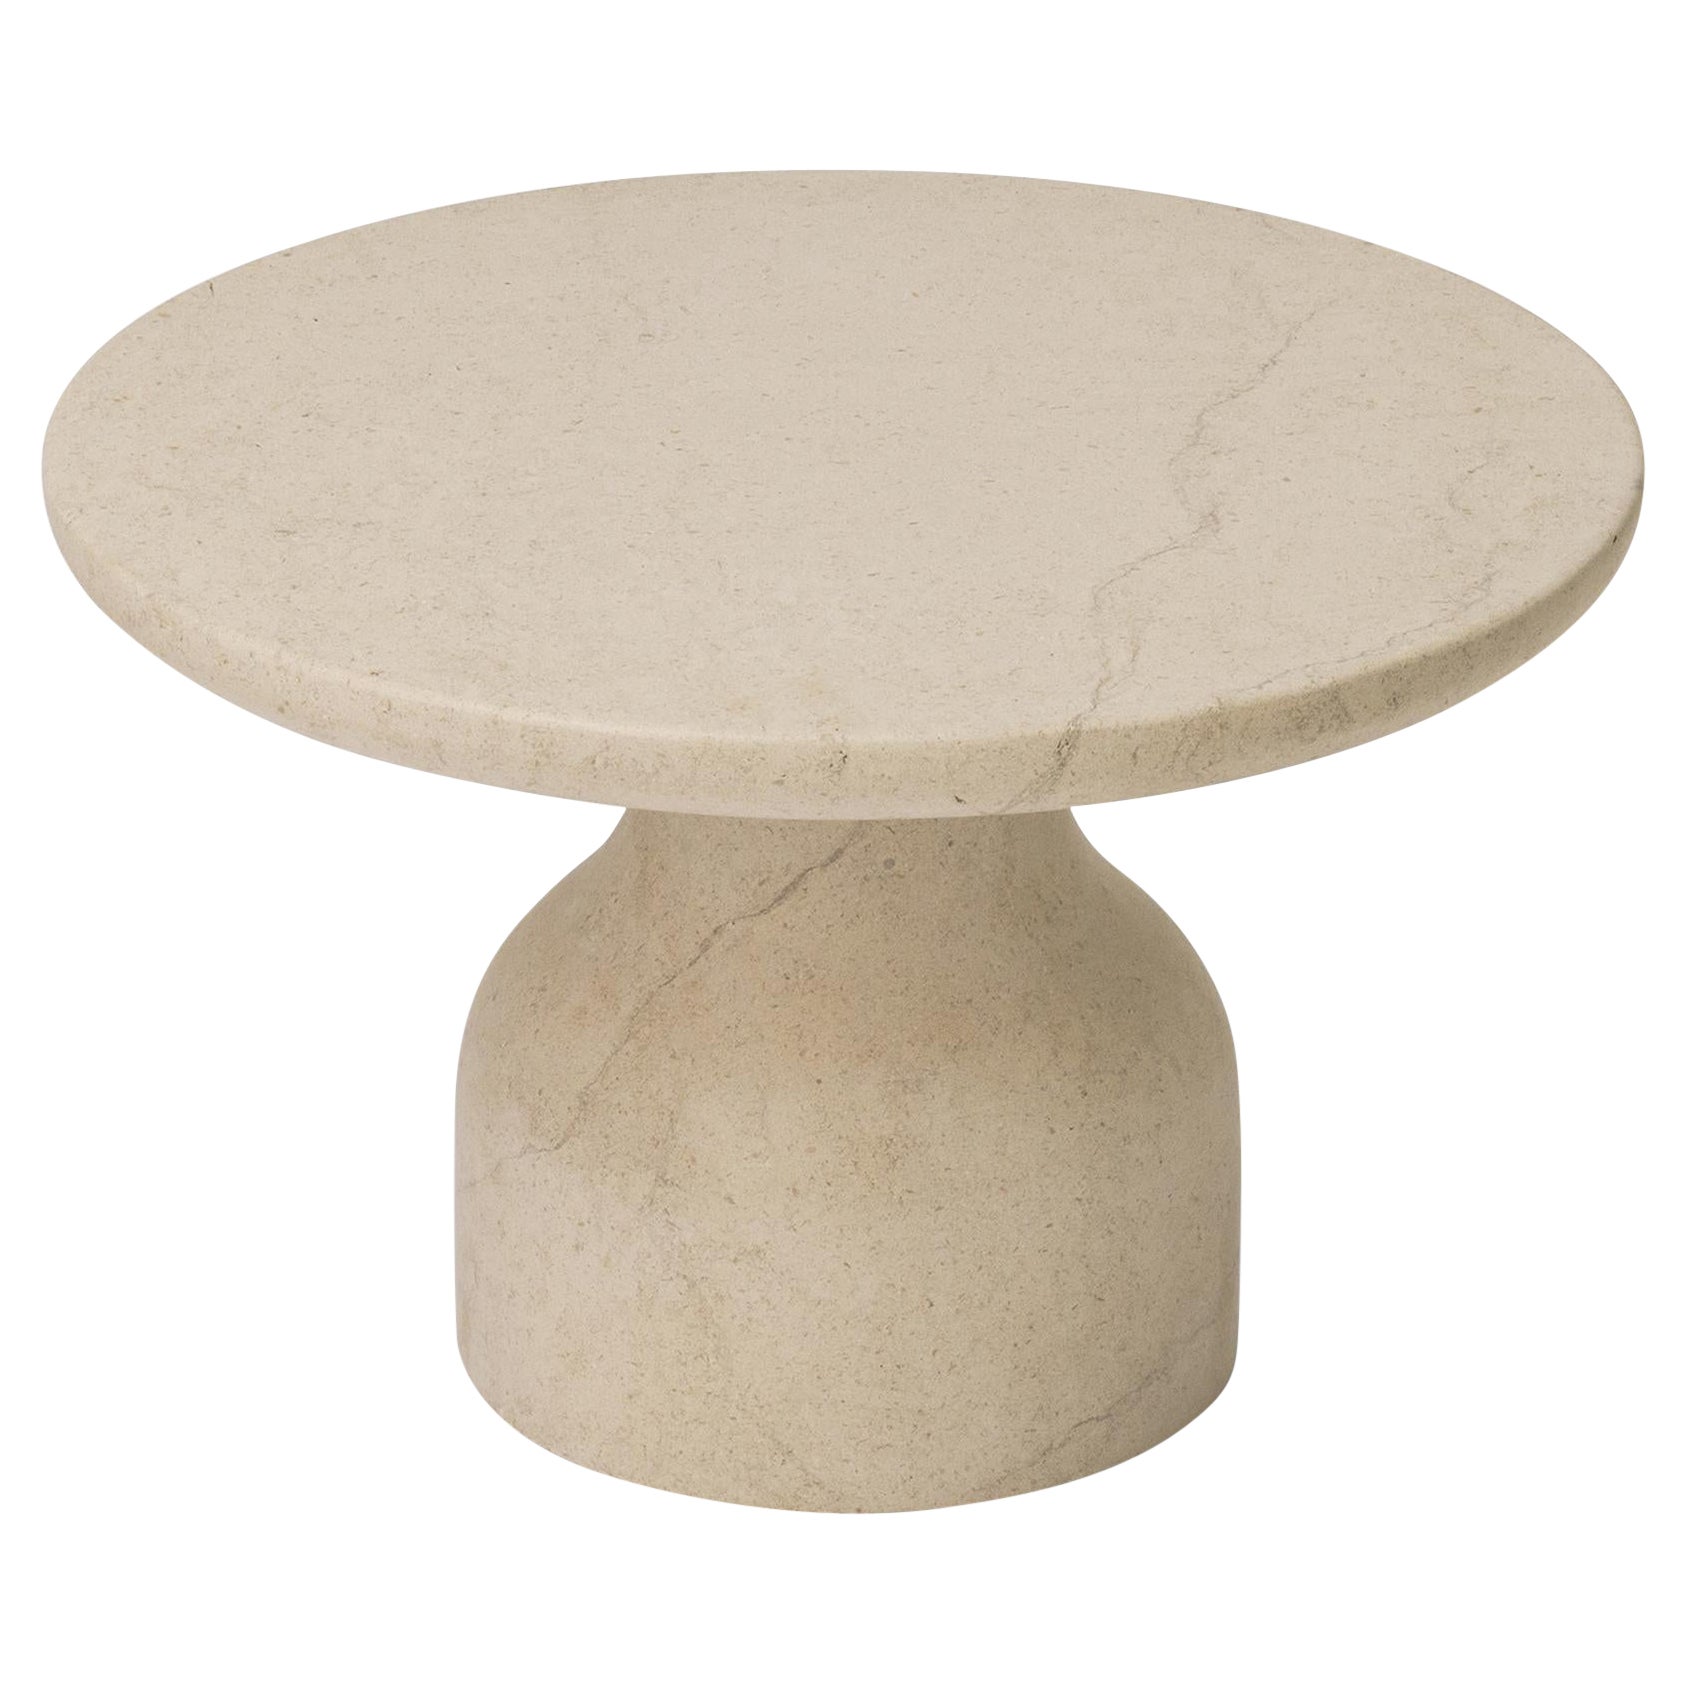 Minimalist Limestone Side Table Small